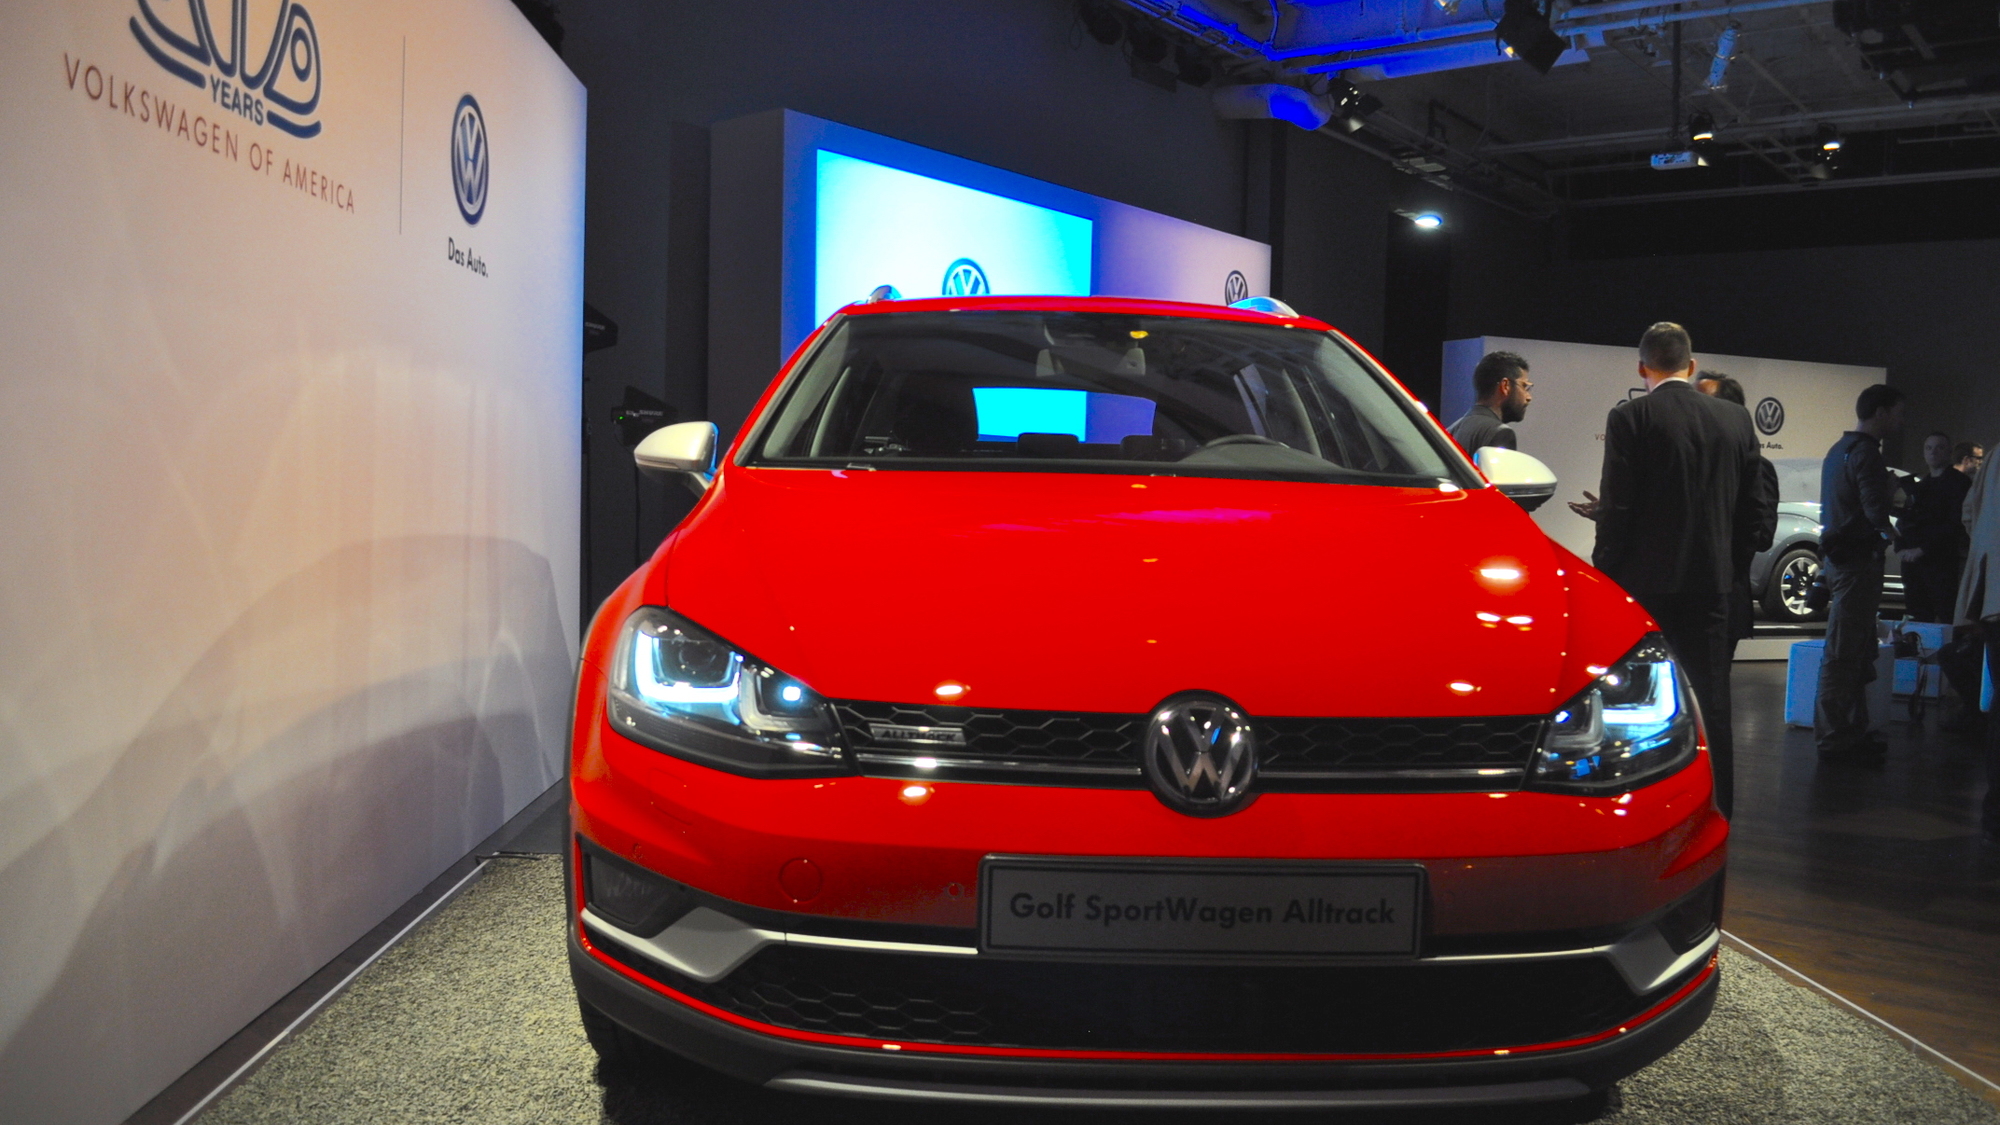 2016 Volkswagen Golf SportWagen Alltrack Live Photos, 2015 New York Auto Show